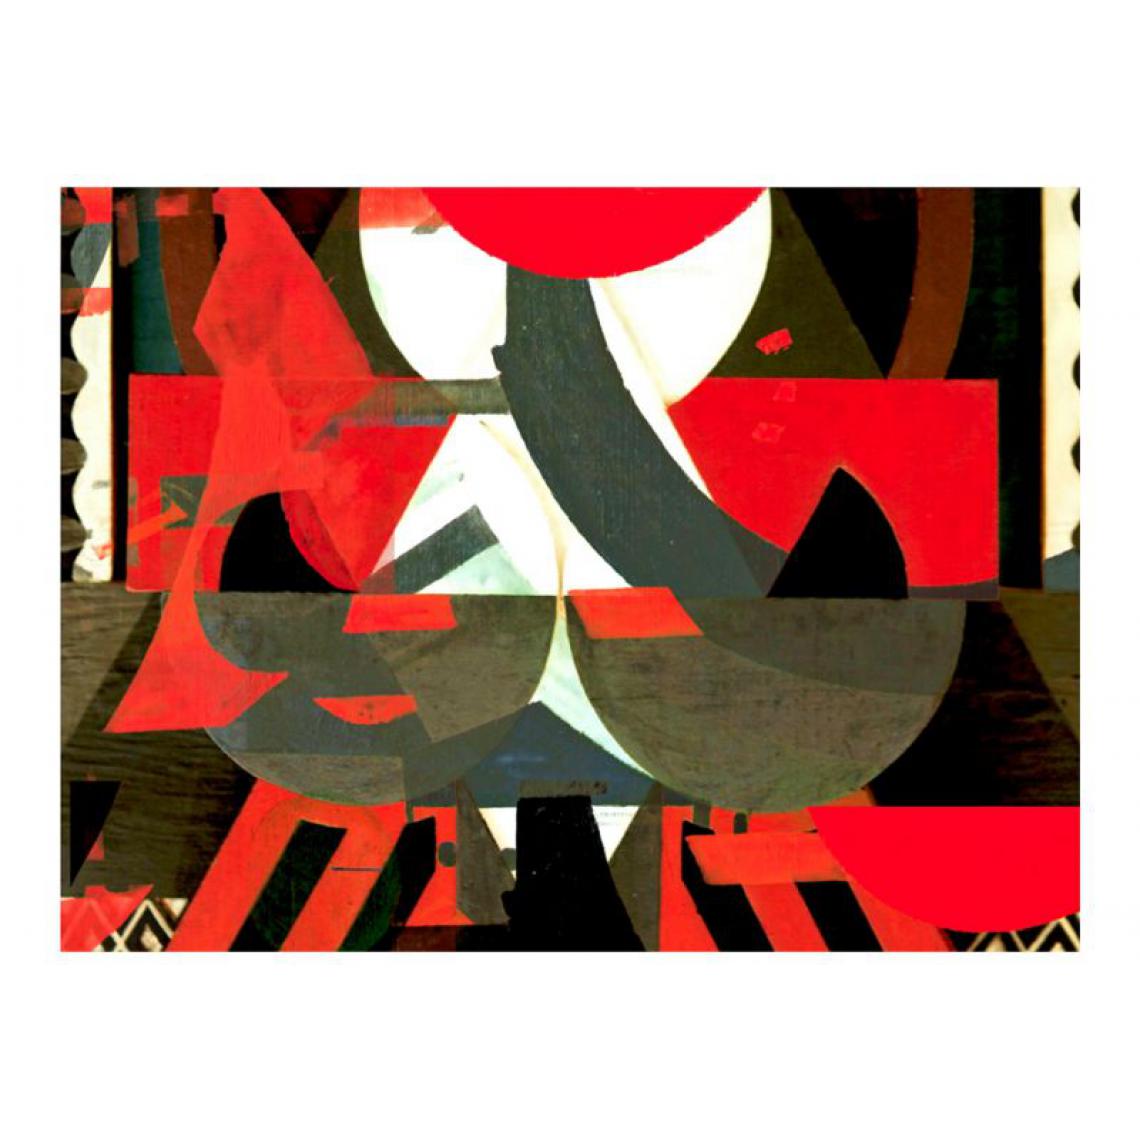 Artgeist - Papier peint - Composition artistique en rouge .Taille : 350x270 - Papier peint